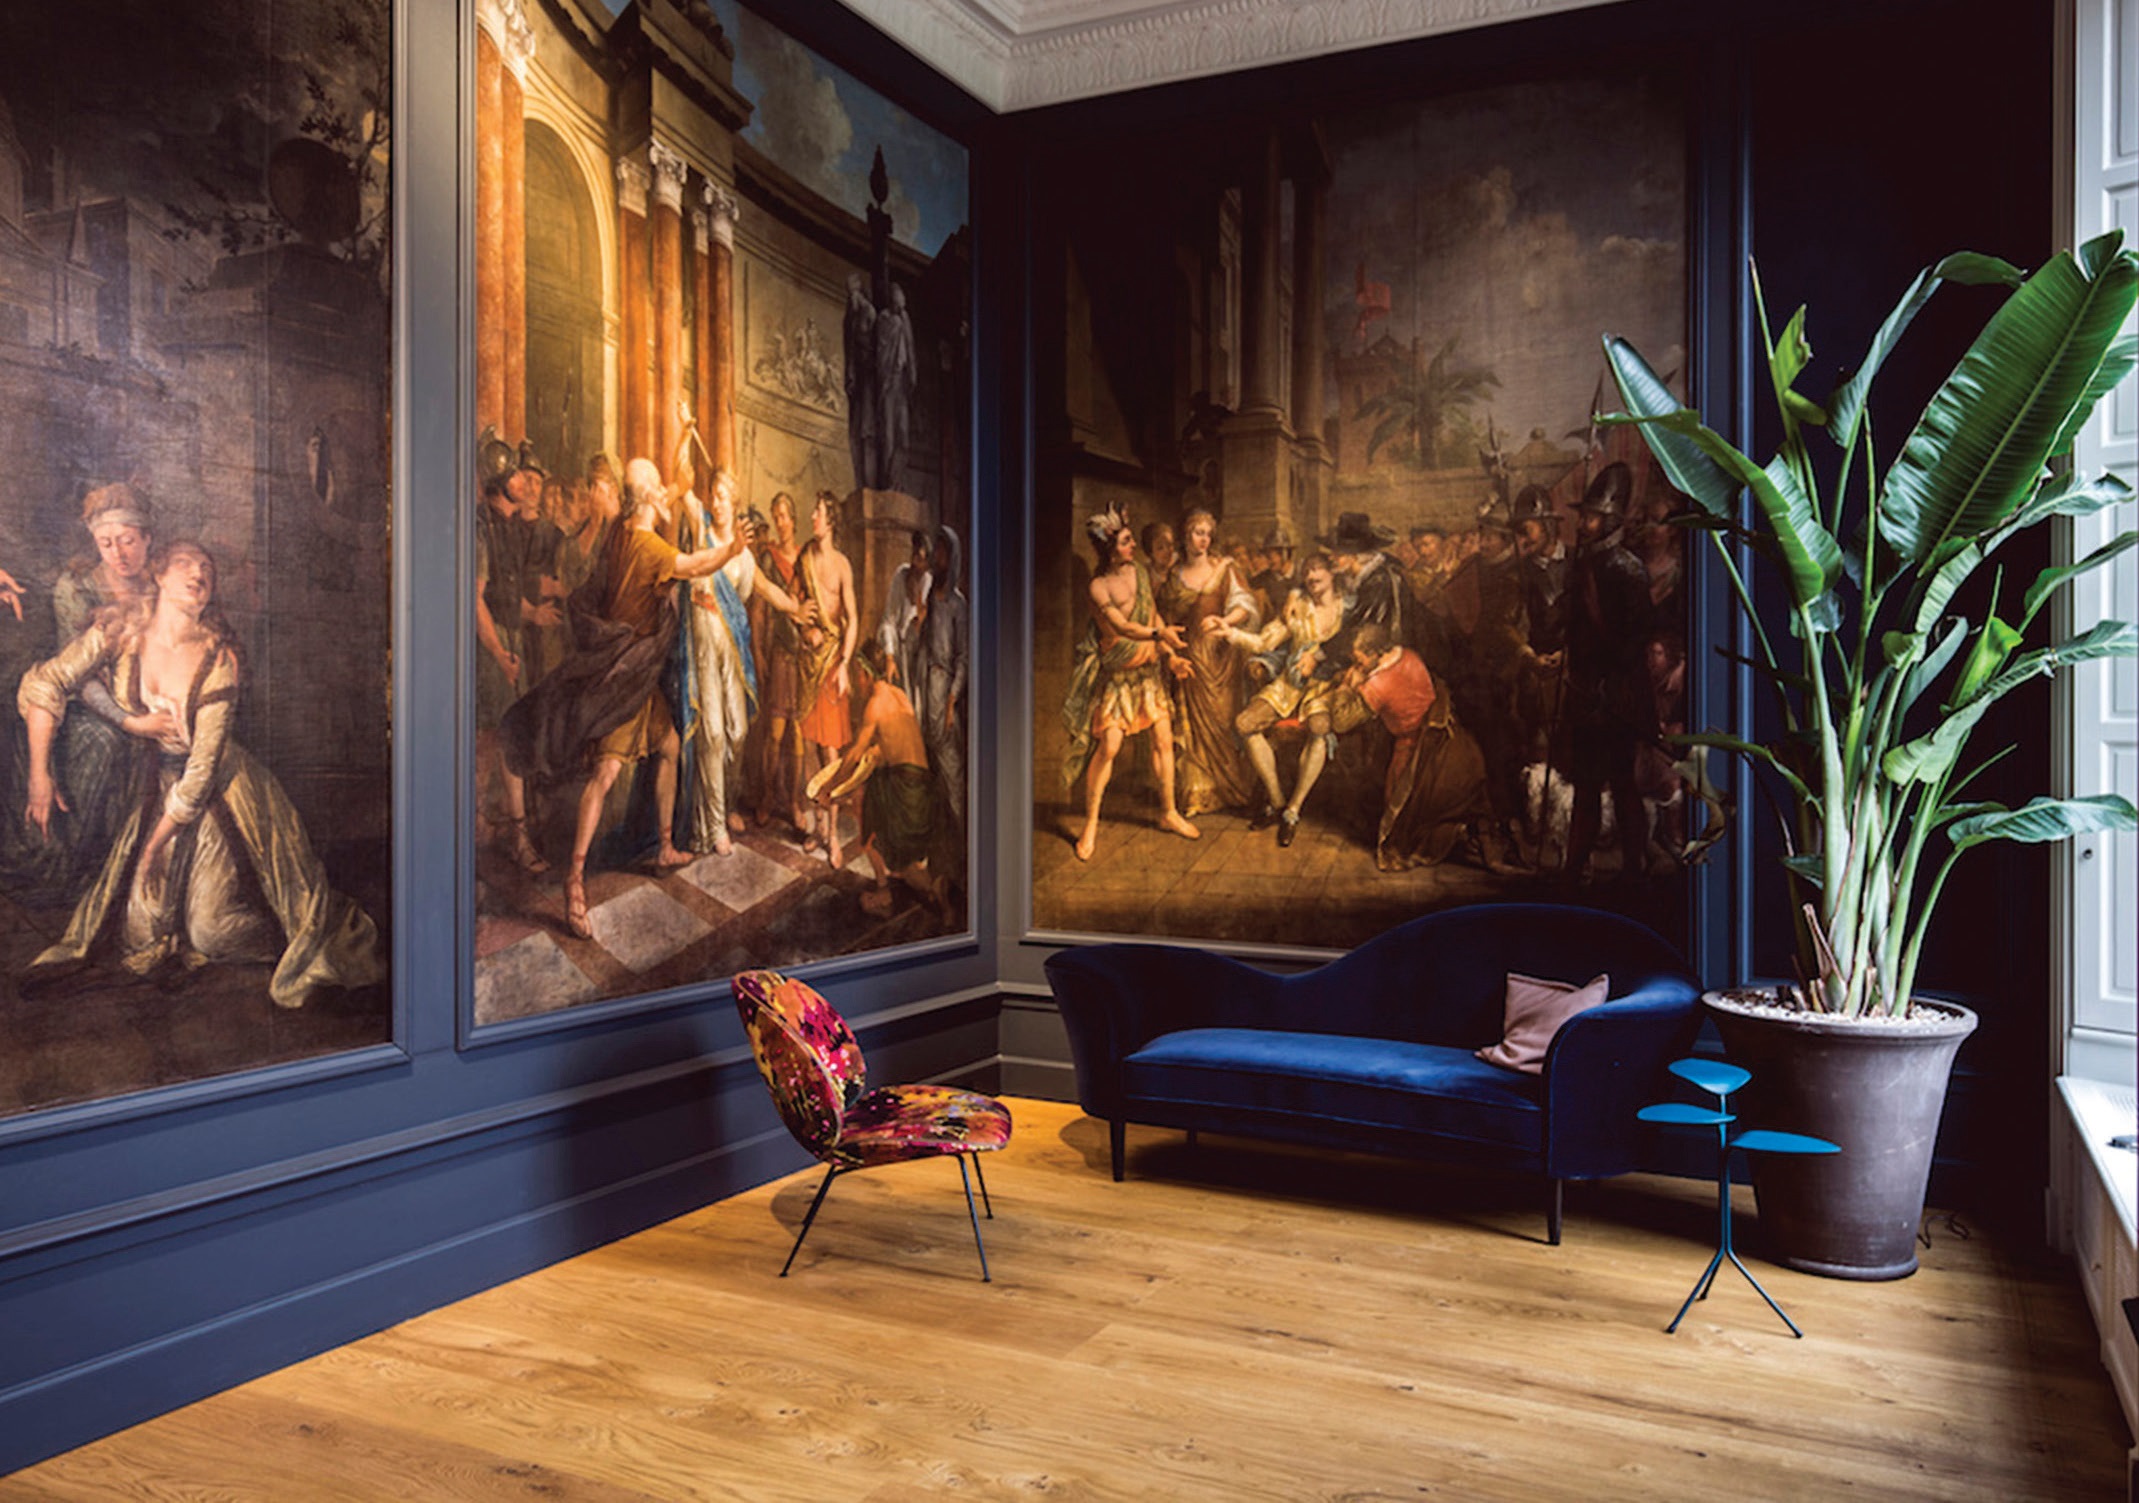 Puikus pavyzdys, kaip Liudviko XVI laikų erdvėje dera šiuolaikinių dizainerių sukurti baldai. Jie suteikia interjerui gyvybės ir byloja apie neišvengiamą laiko tėkmę